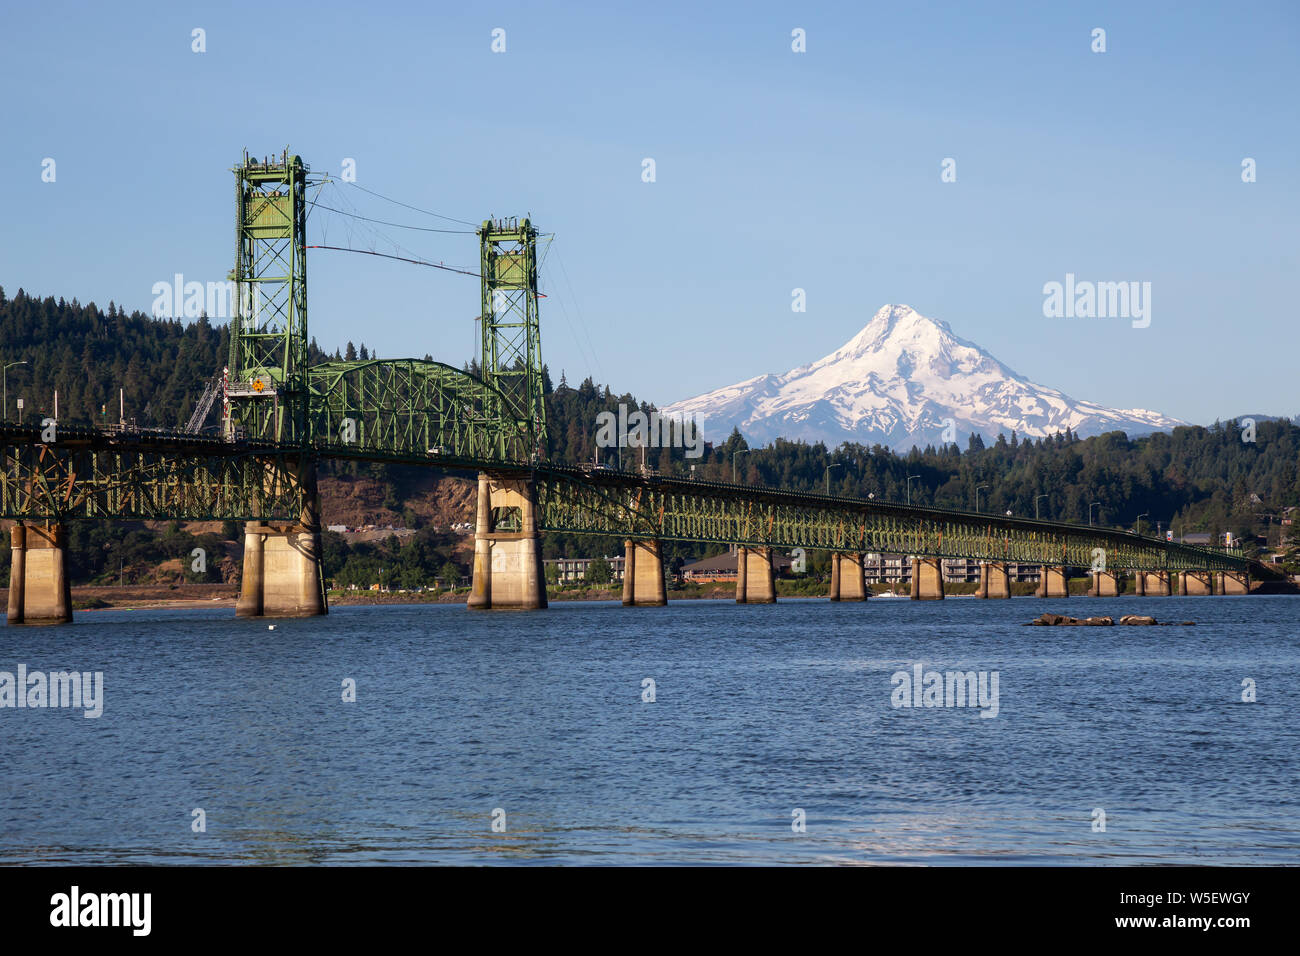 Bellissima vista di Hood River Bridge andando oltre il Columbia River con il monte Cofano in background. Preso in bianco e salmone, Washington, Stati Uniti d'America. Foto Stock